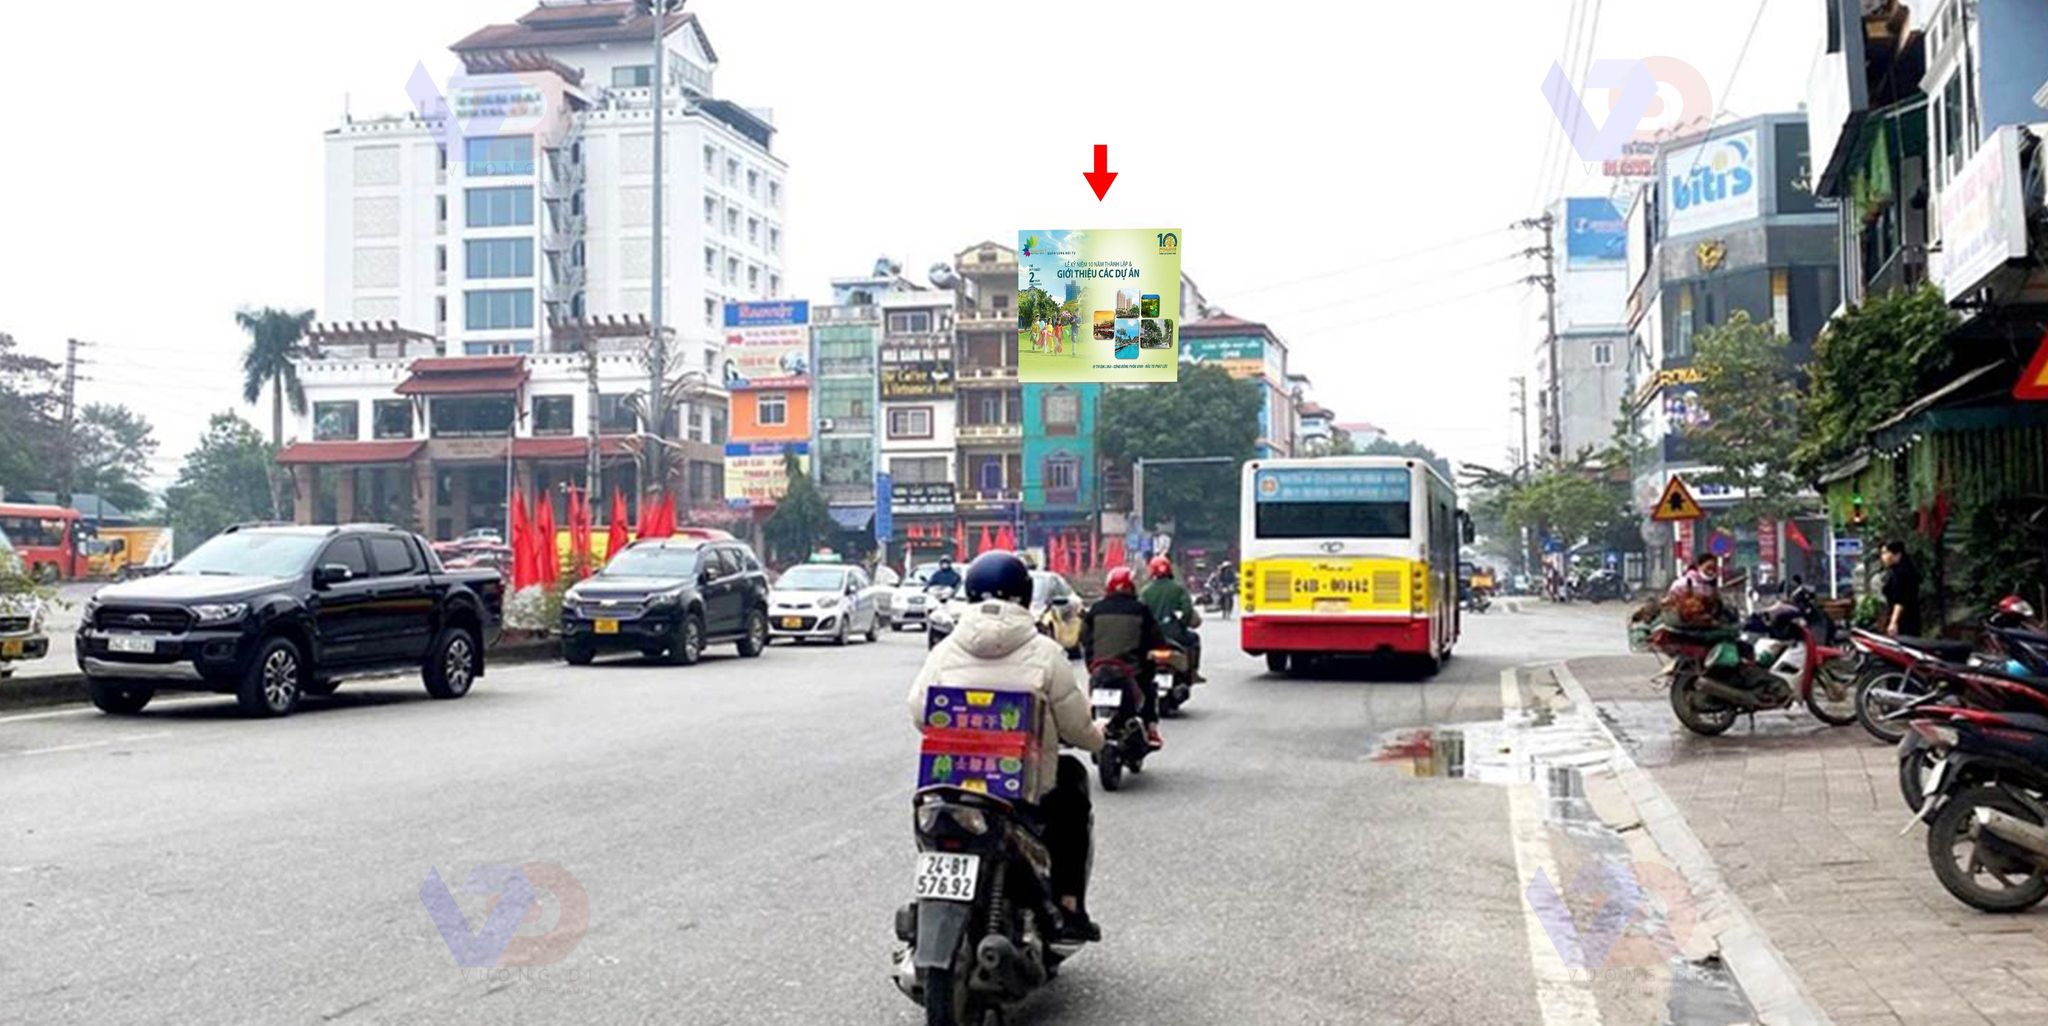 Bảng quảng cáo tại Ngã 3 Nguyễn Huệ - Hợp Thành, Thị xã Lào Cai, Tỉnh Lào Cai